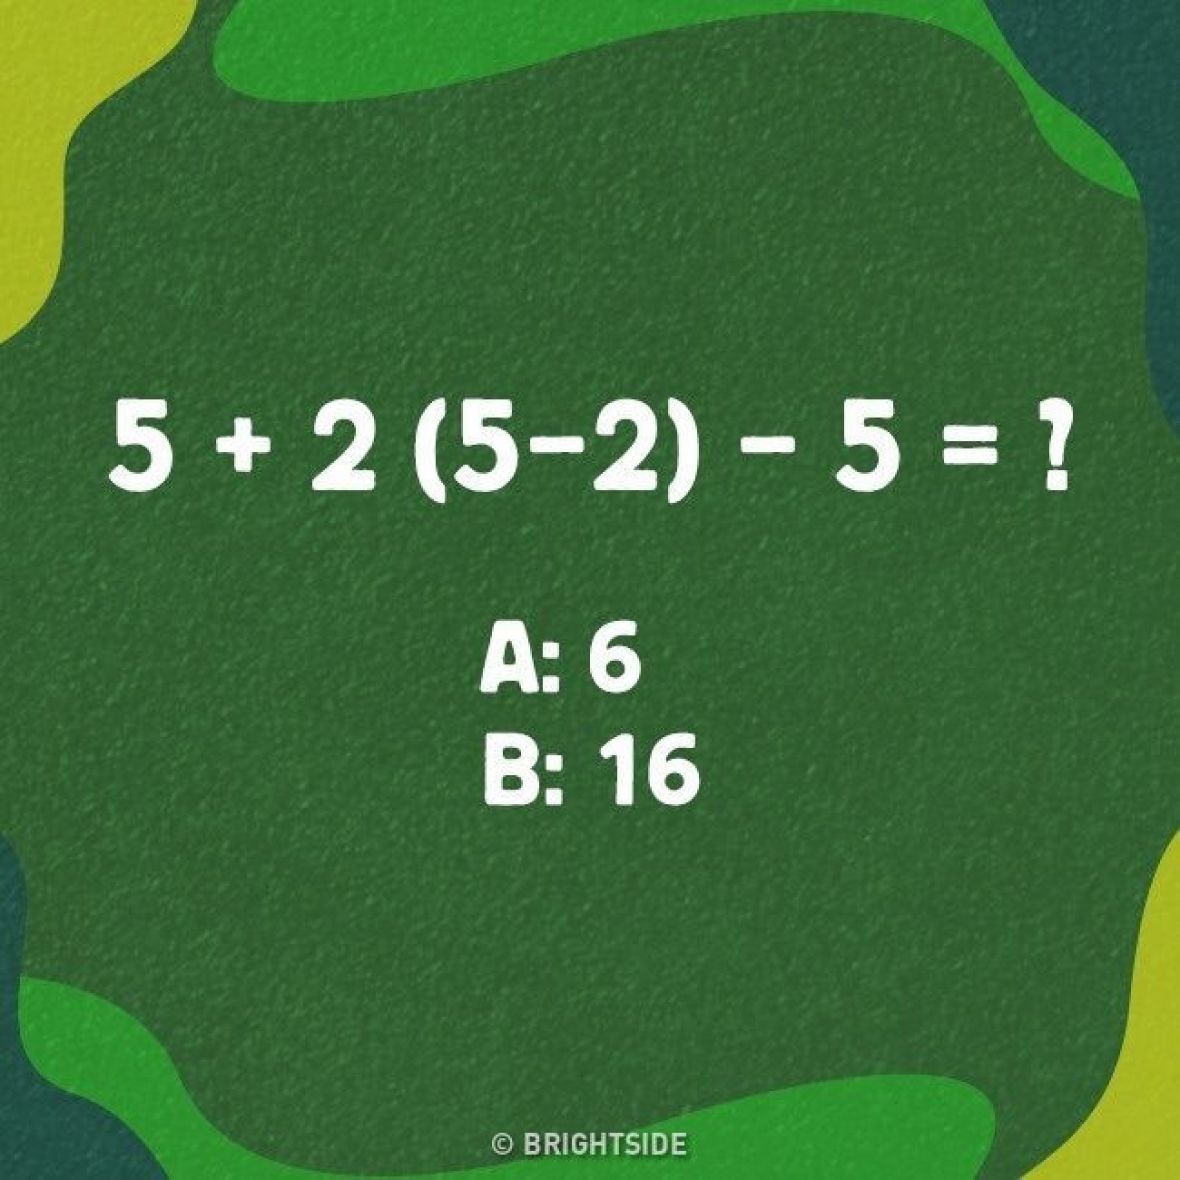 Nova matematička mozgalica ‘posvađala’ internet: Šta je tačan odgovor?